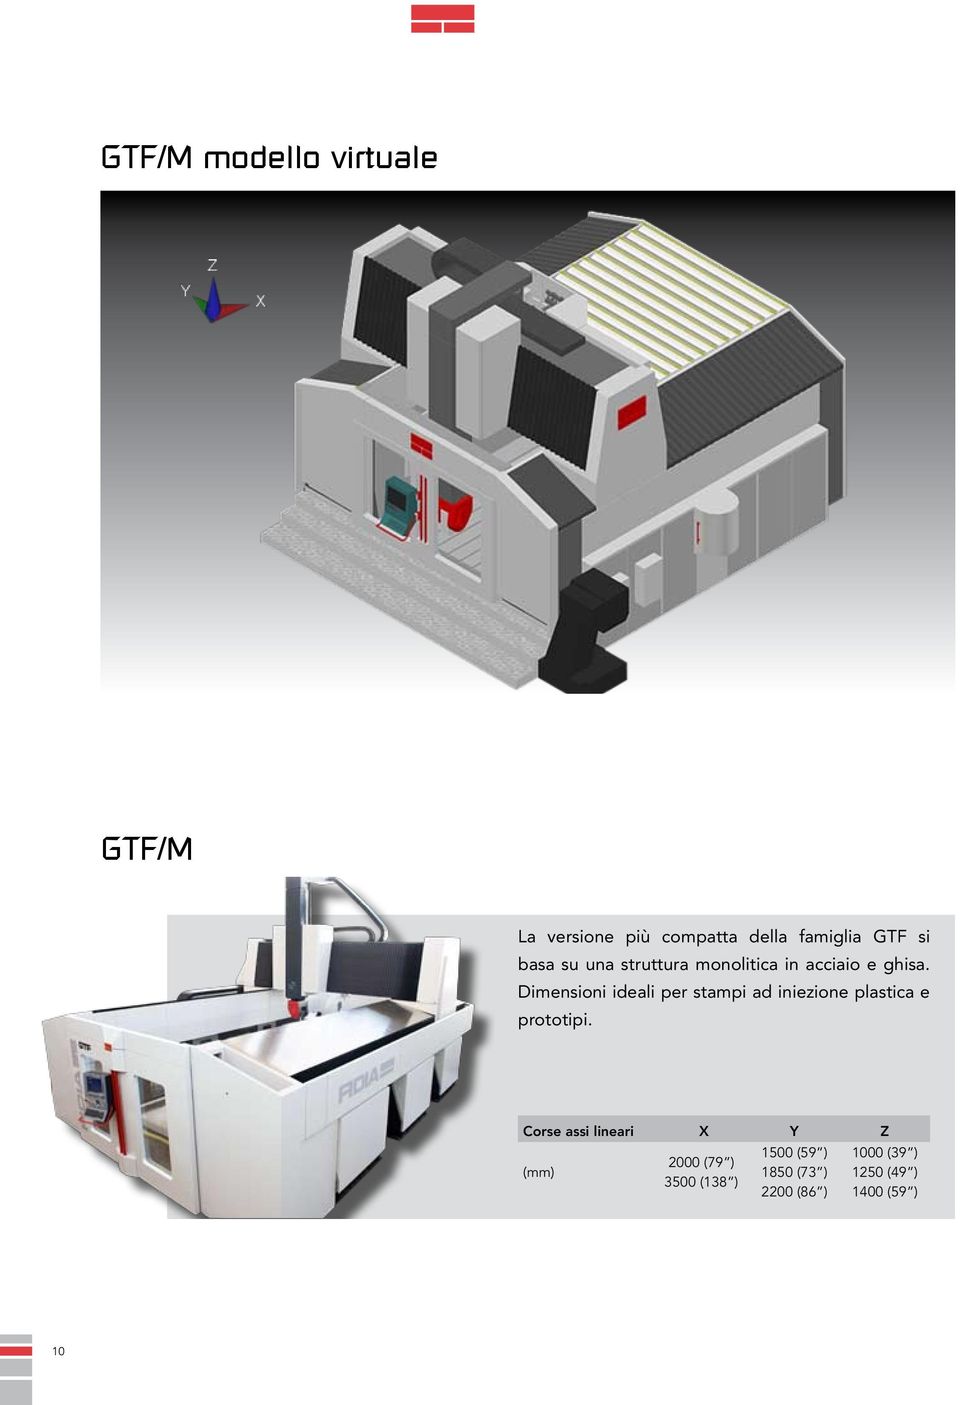 Dimensioni ideali per stampi ad iniezione plastica e prototipi.